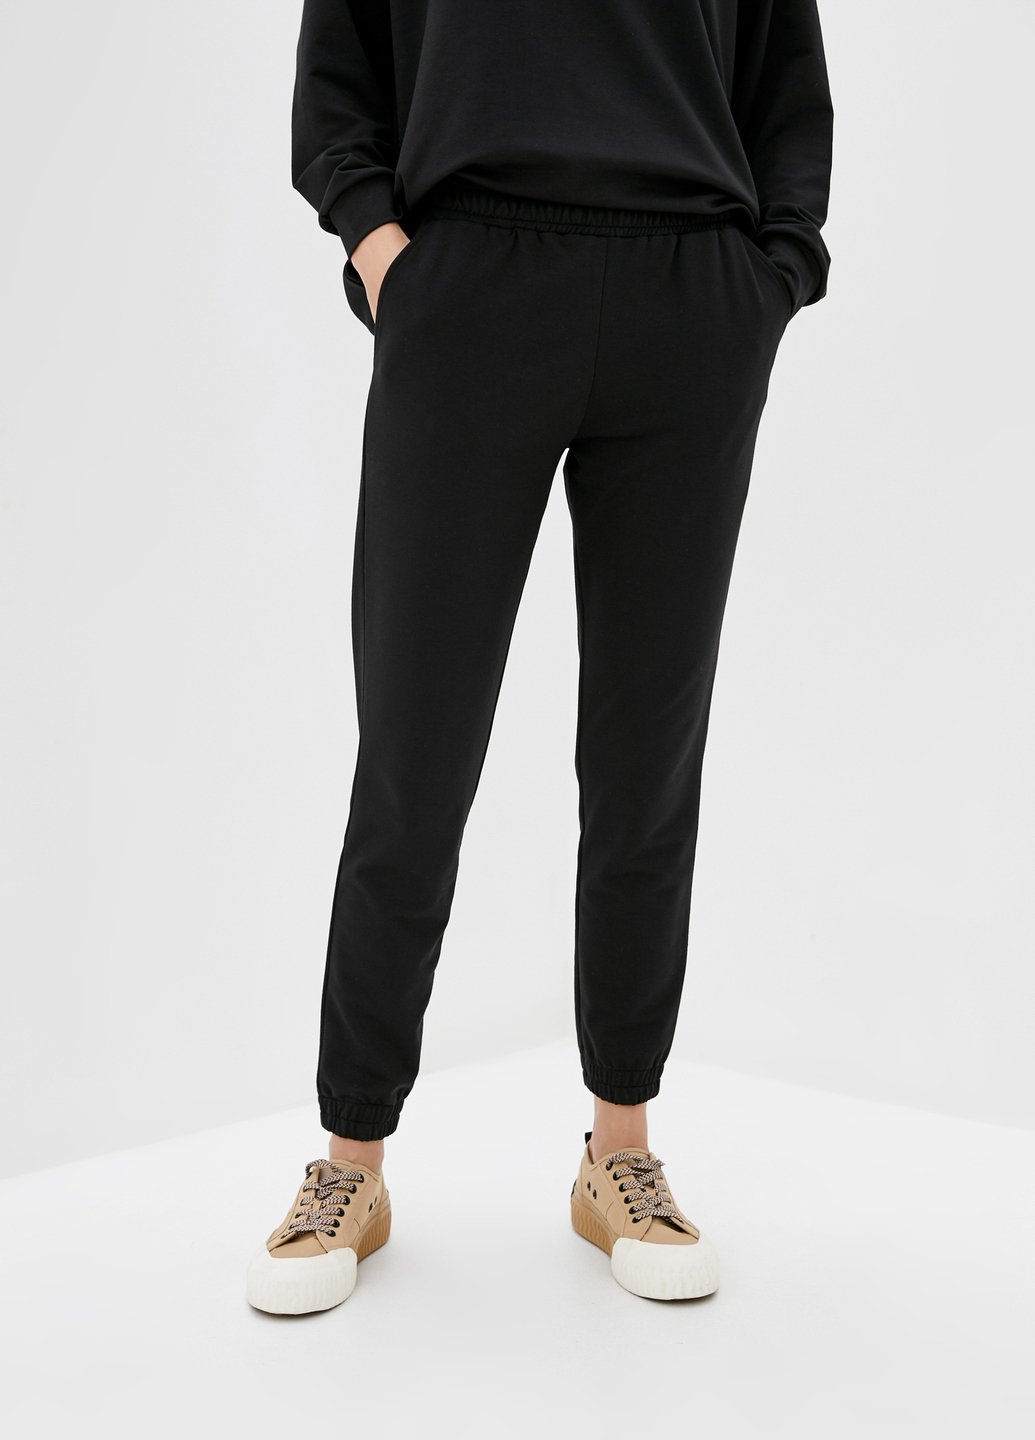 Купить Спортивные штаны женские Merlini Латина 600000014 - Черный, 42-44 в интернет-магазине